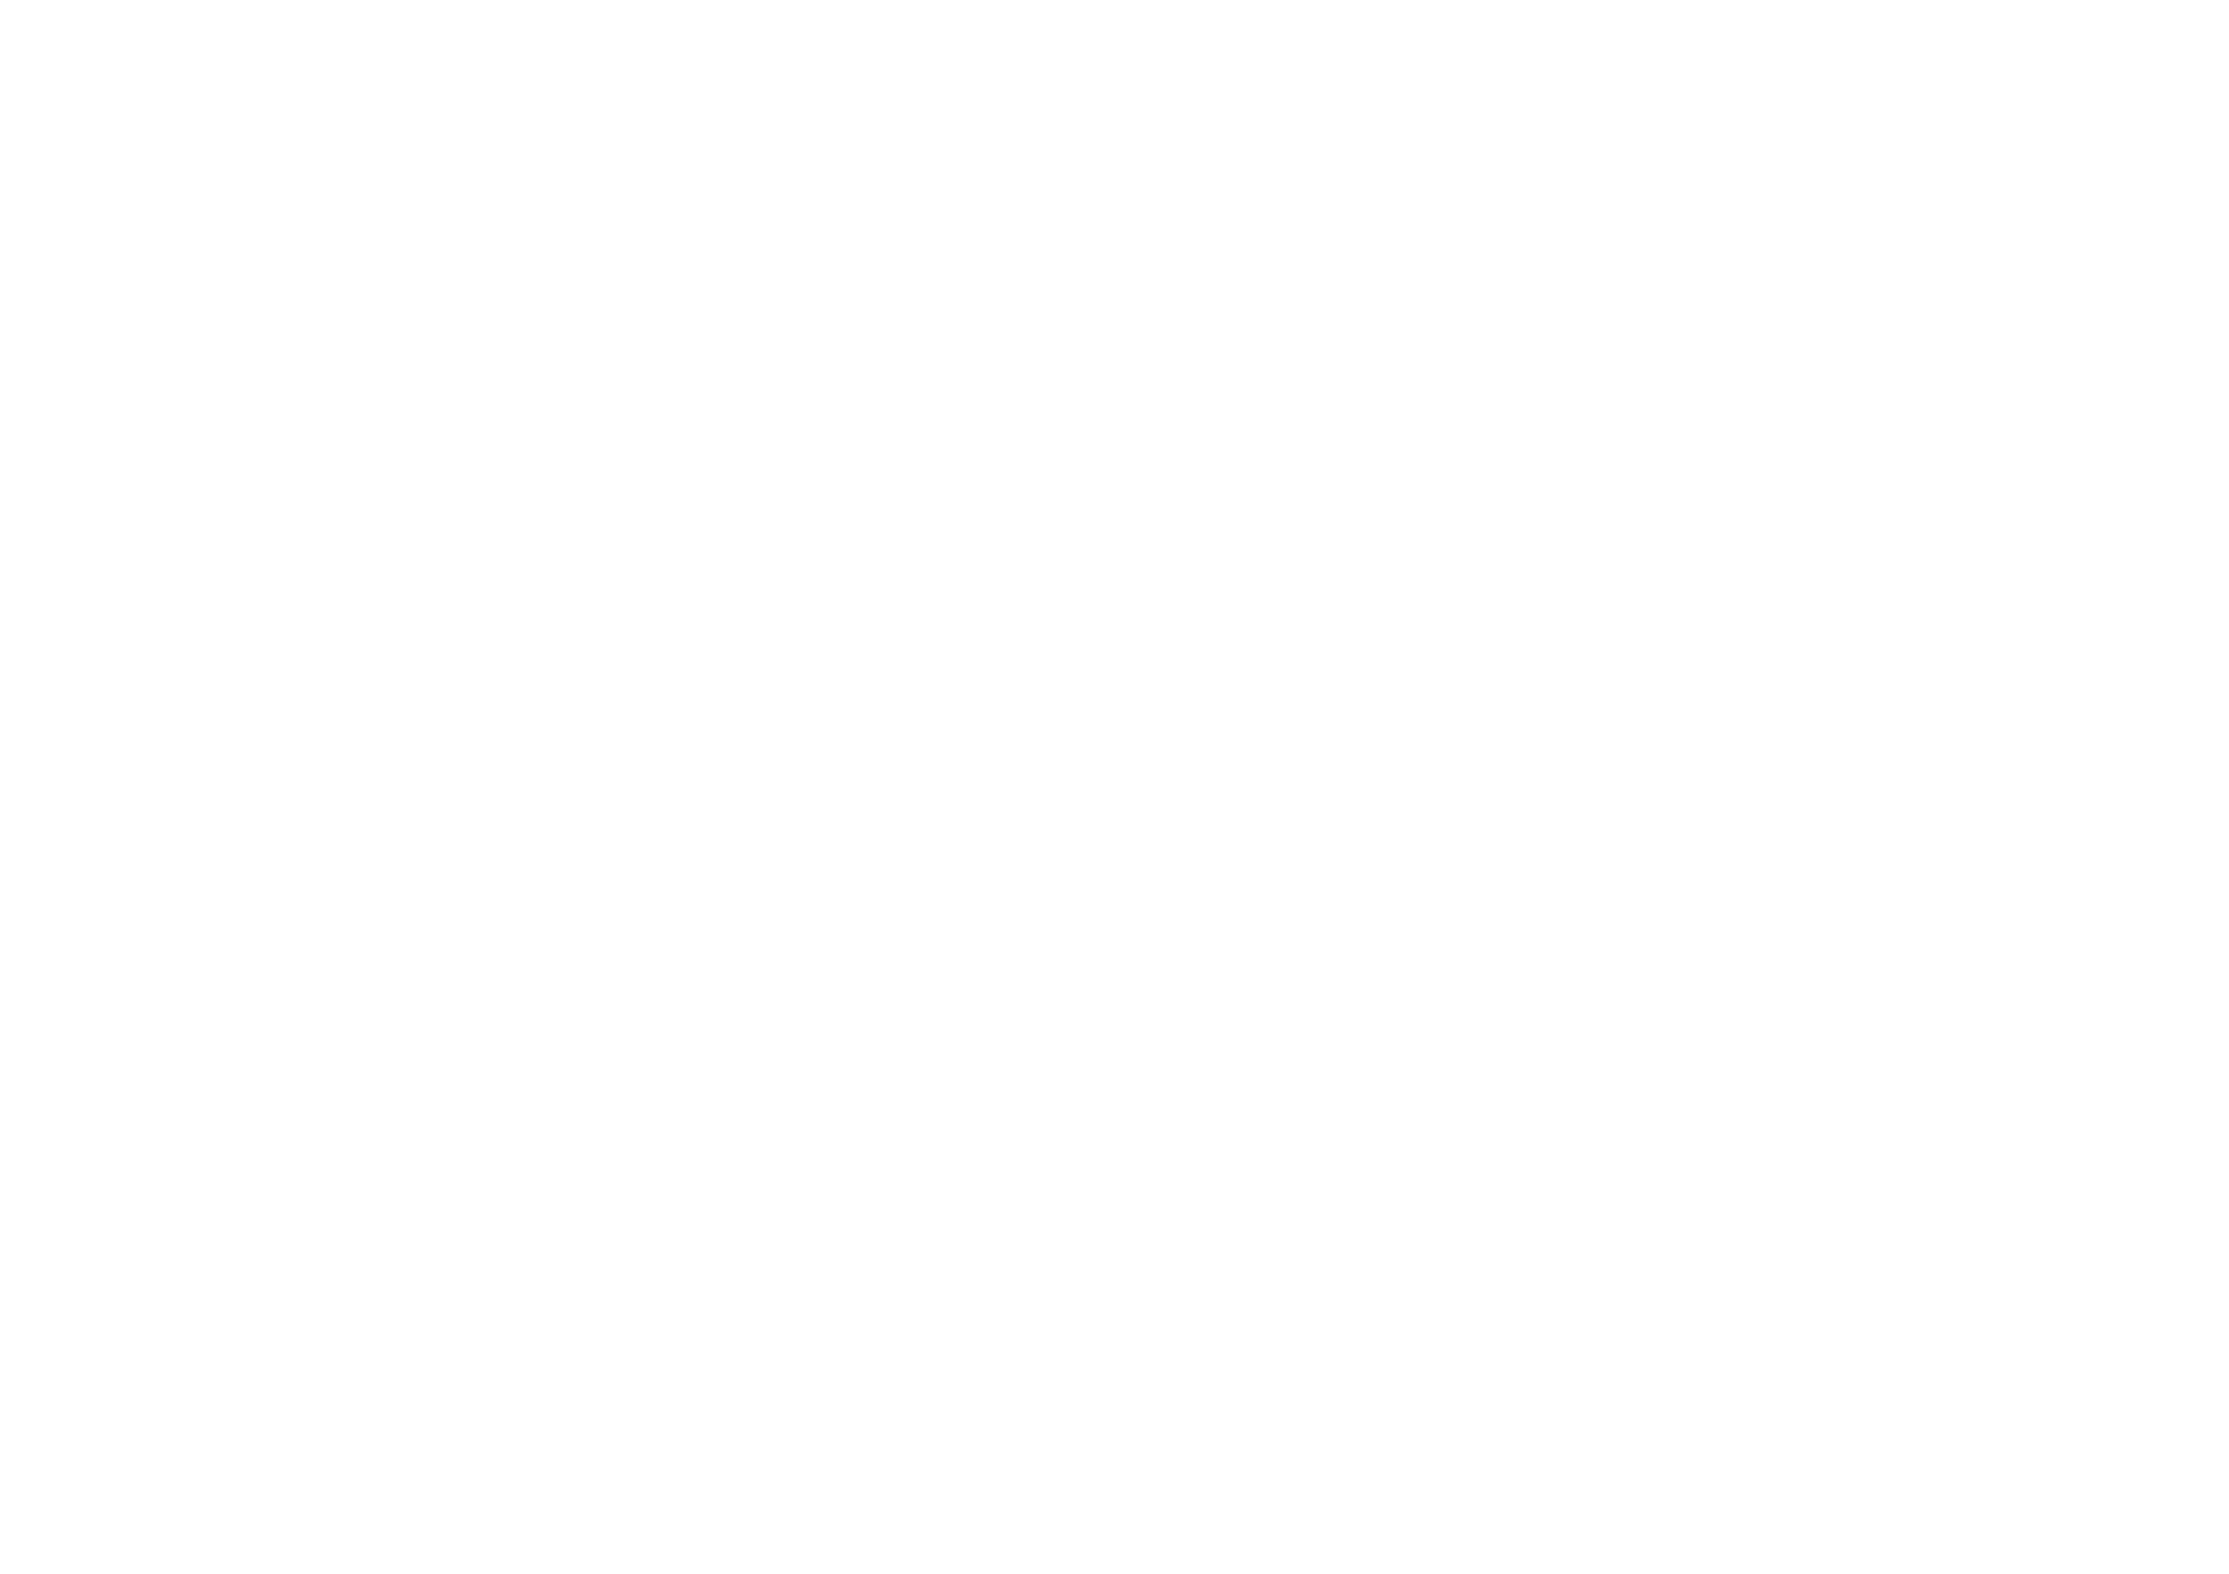 LoveBoulder Co